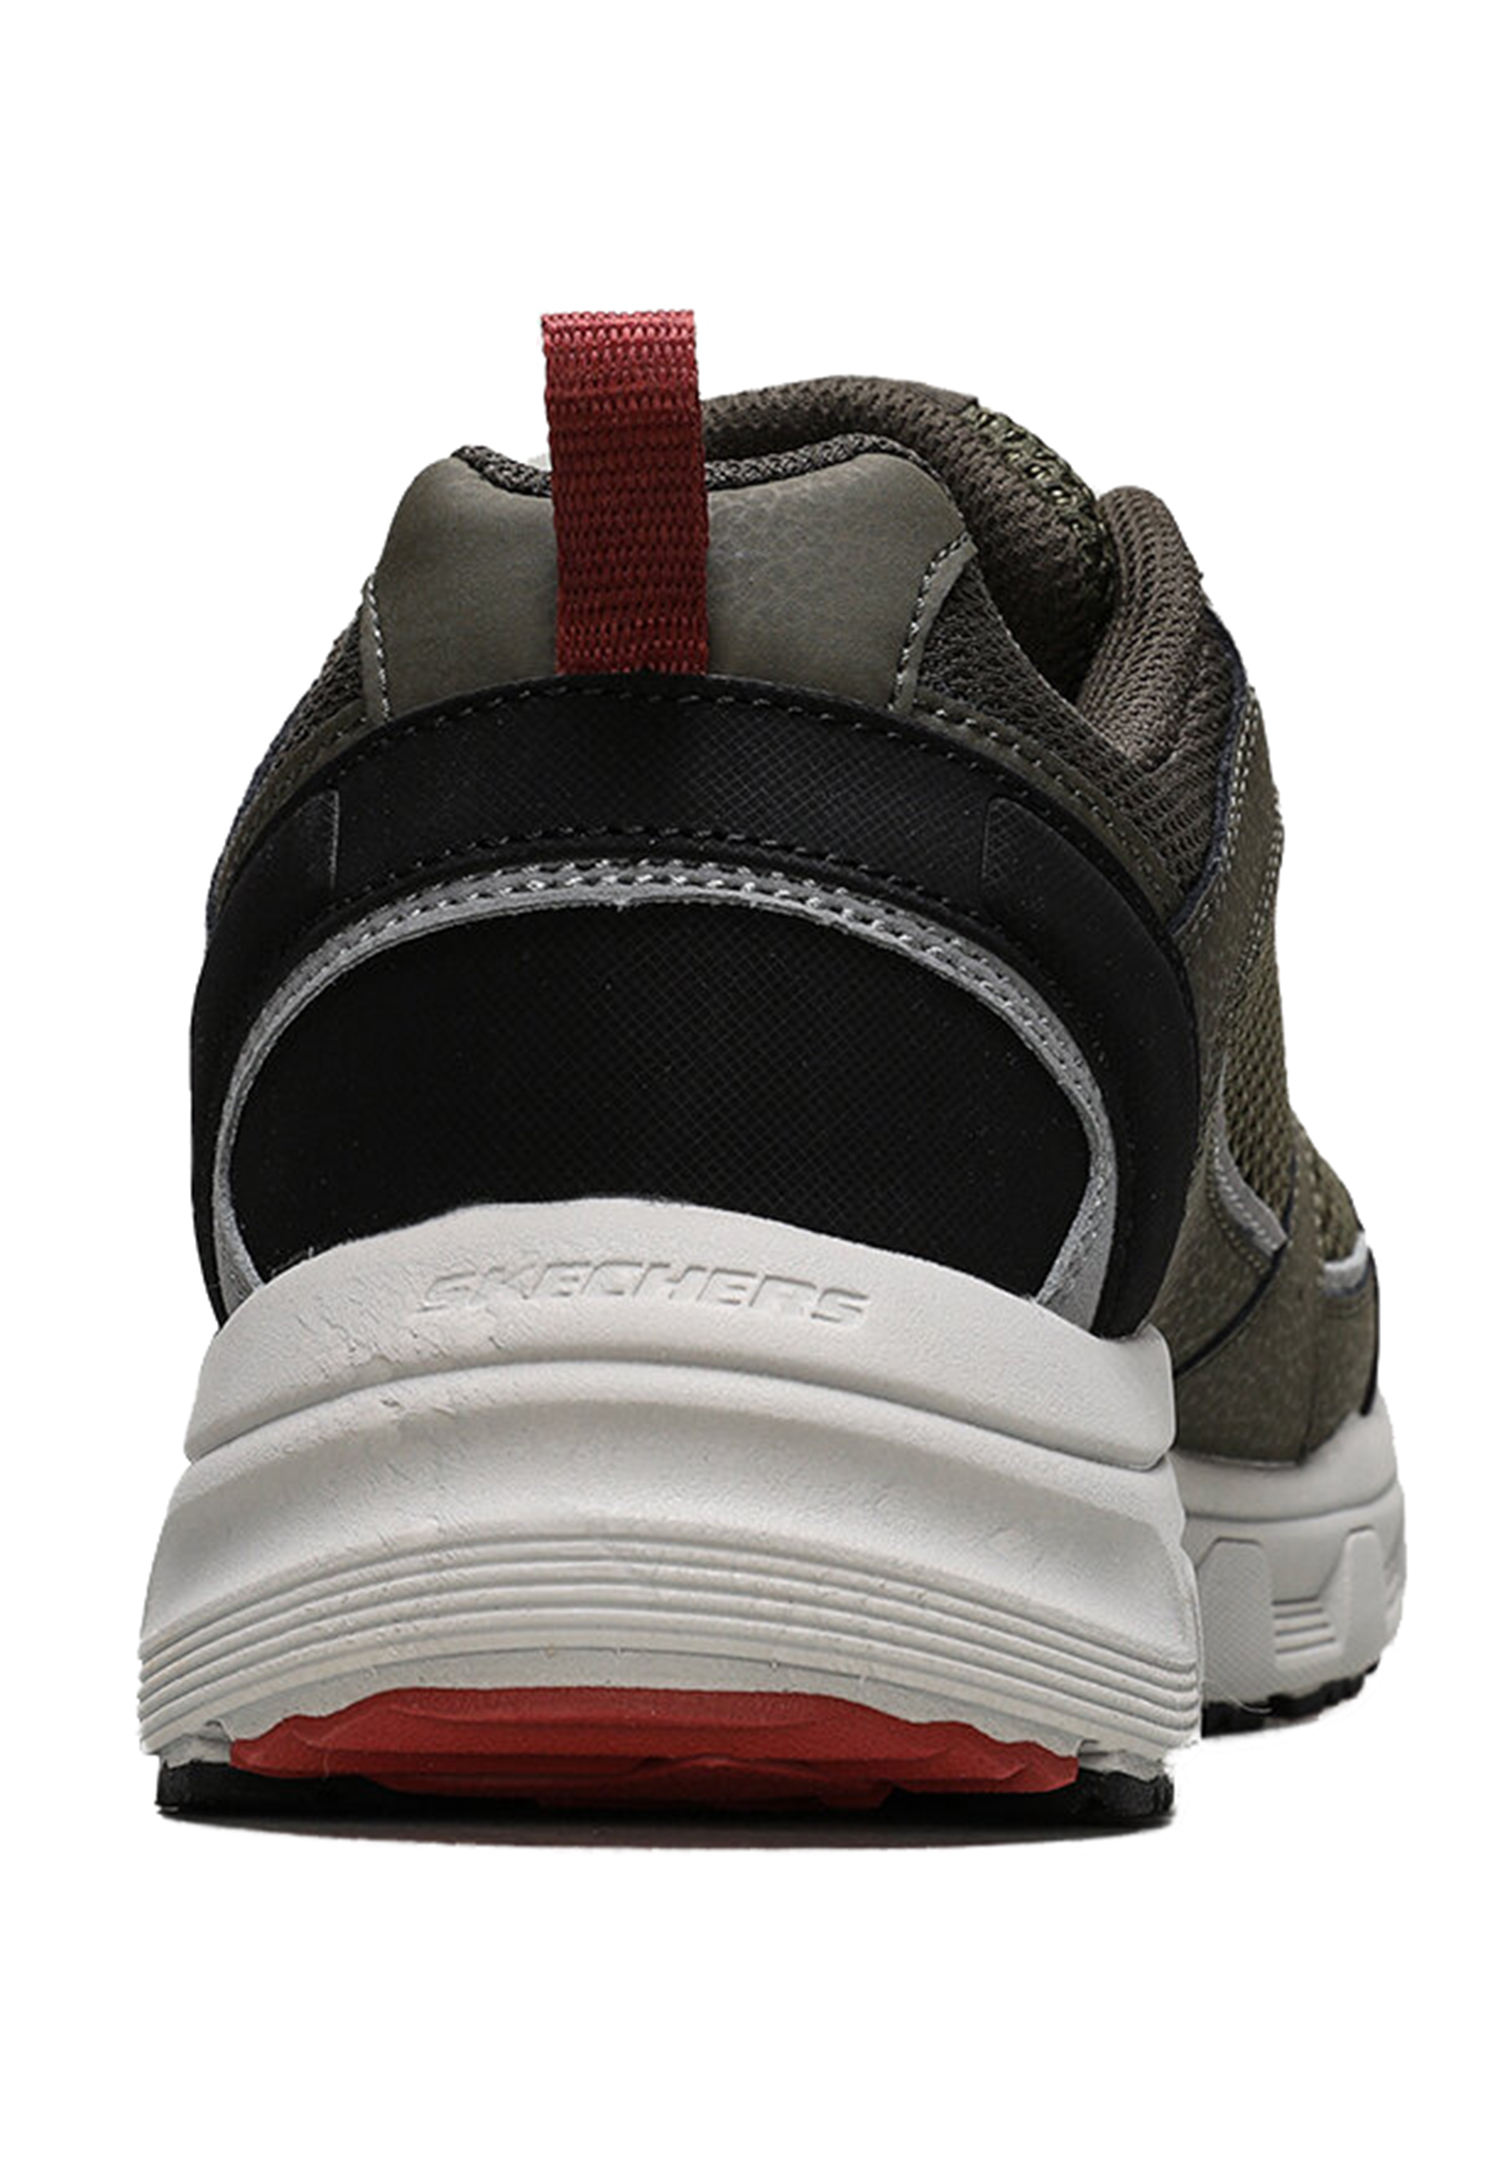 Skechers Outdoor Oak Canyon - VERKETTA Herren Sneaker 51898 Olive